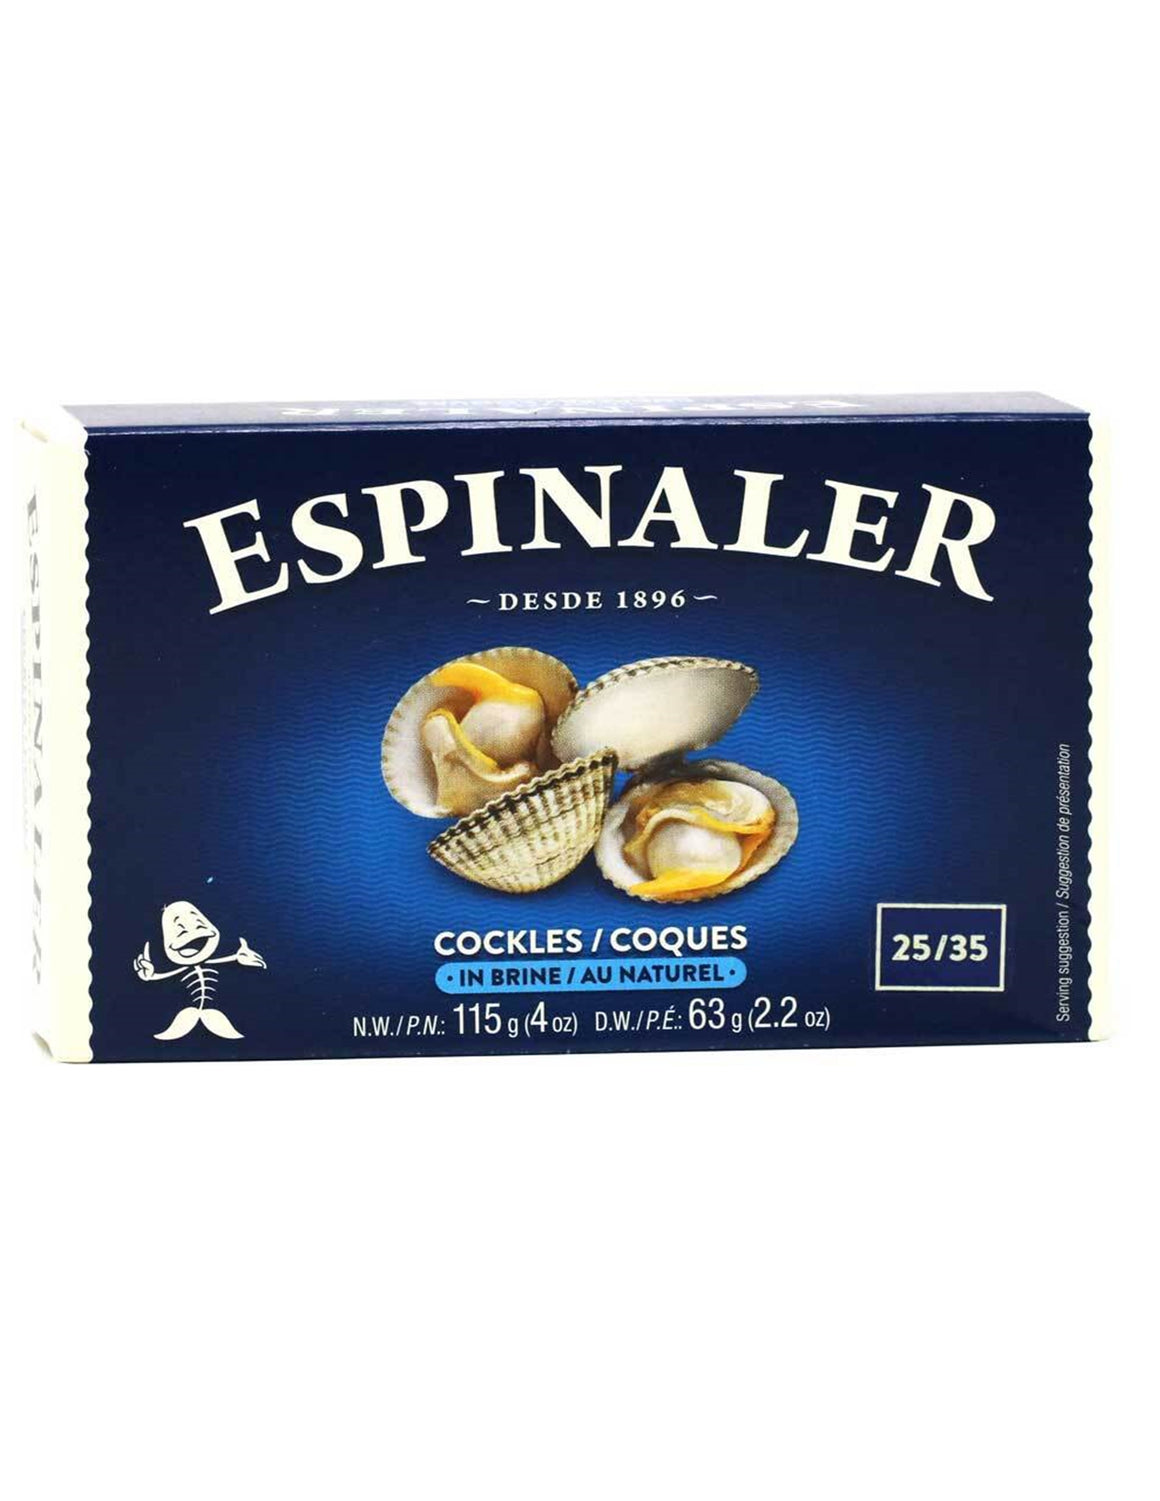 Espinaler -Cockles/ Coques.